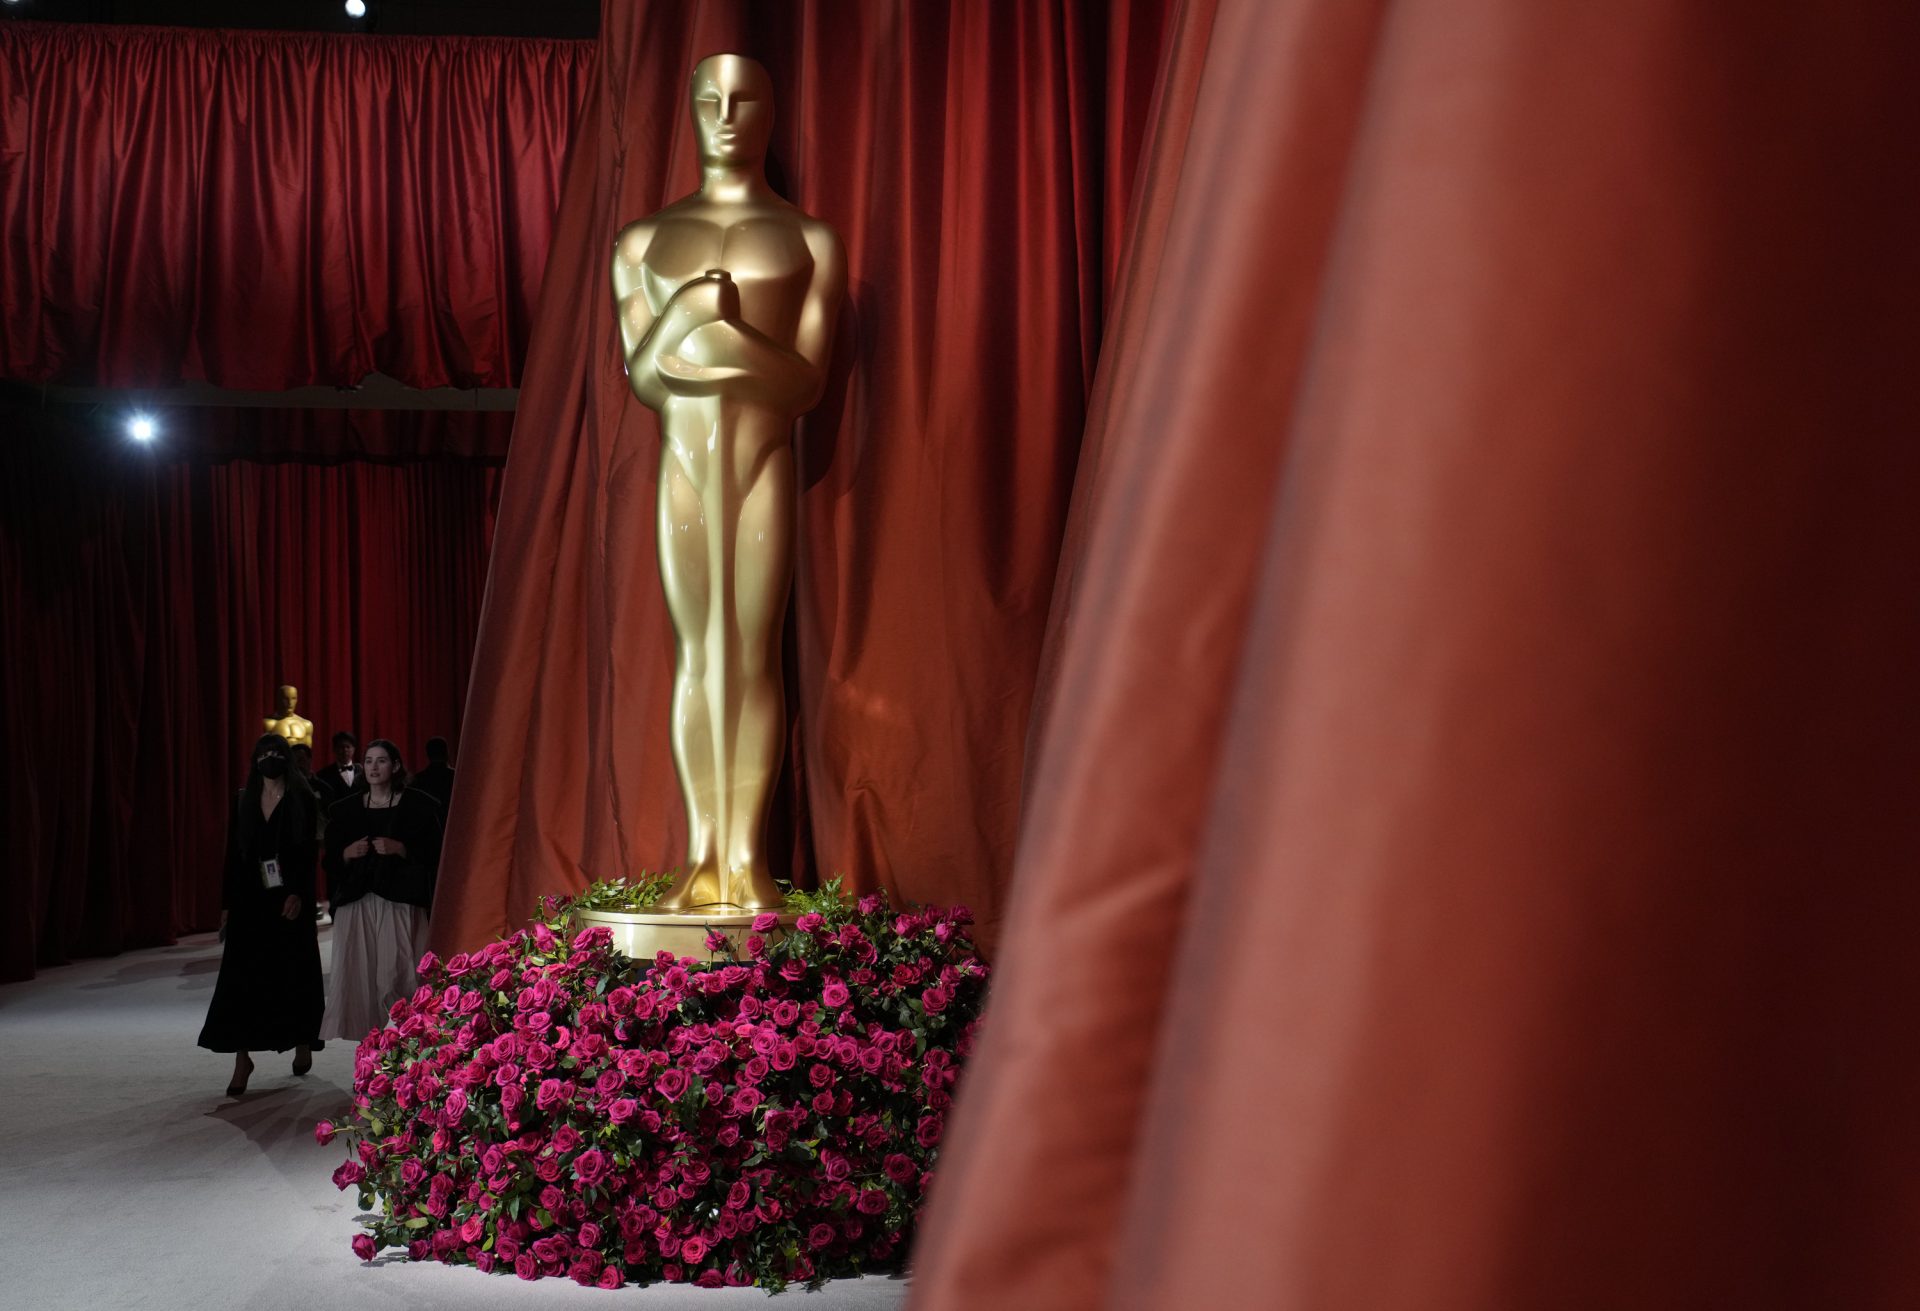 Principal premiação do cinema tem tapete em tom champanhe neste ano - Foto: John Locher/Associated Press/Estadão Conteúdo